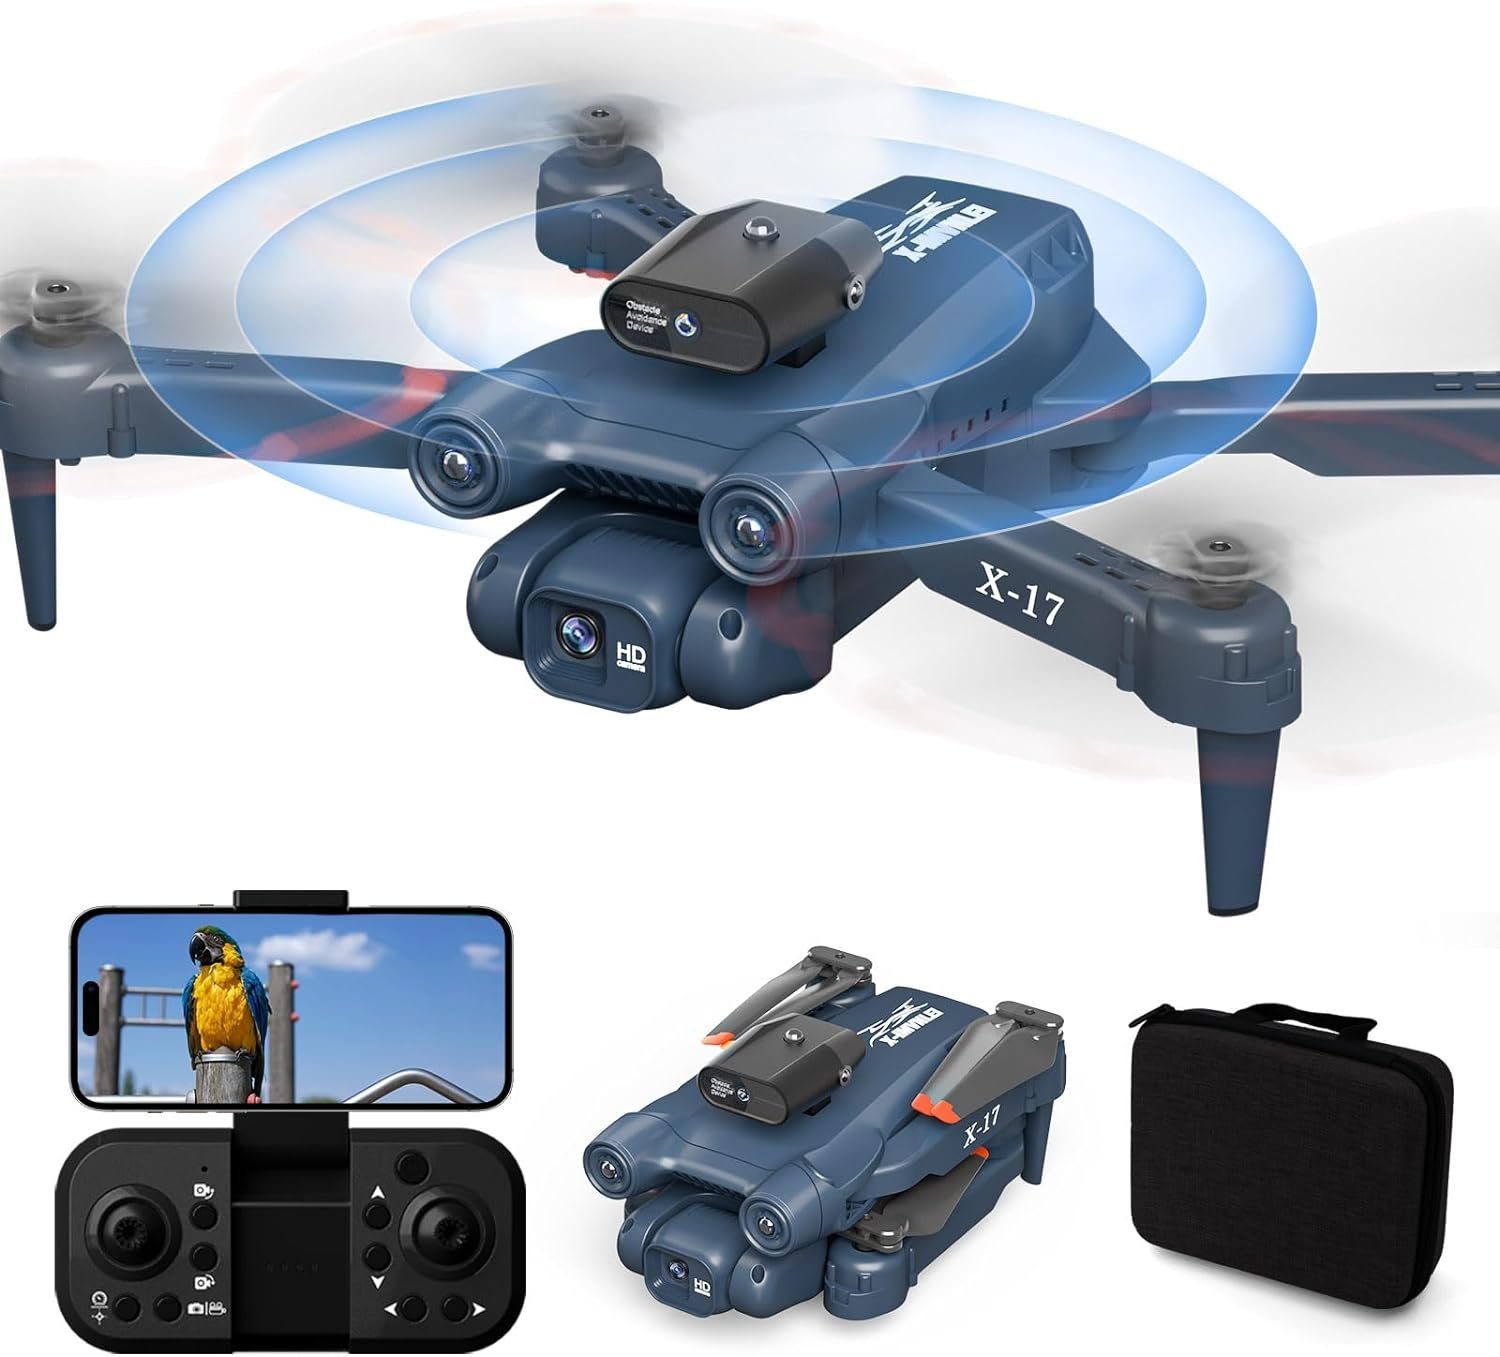 Schwerkraft) Faltbare X-IMVNLEI Drohne Anfänger WiFi für FPV Quadcopter (1080p, Erwachsene und